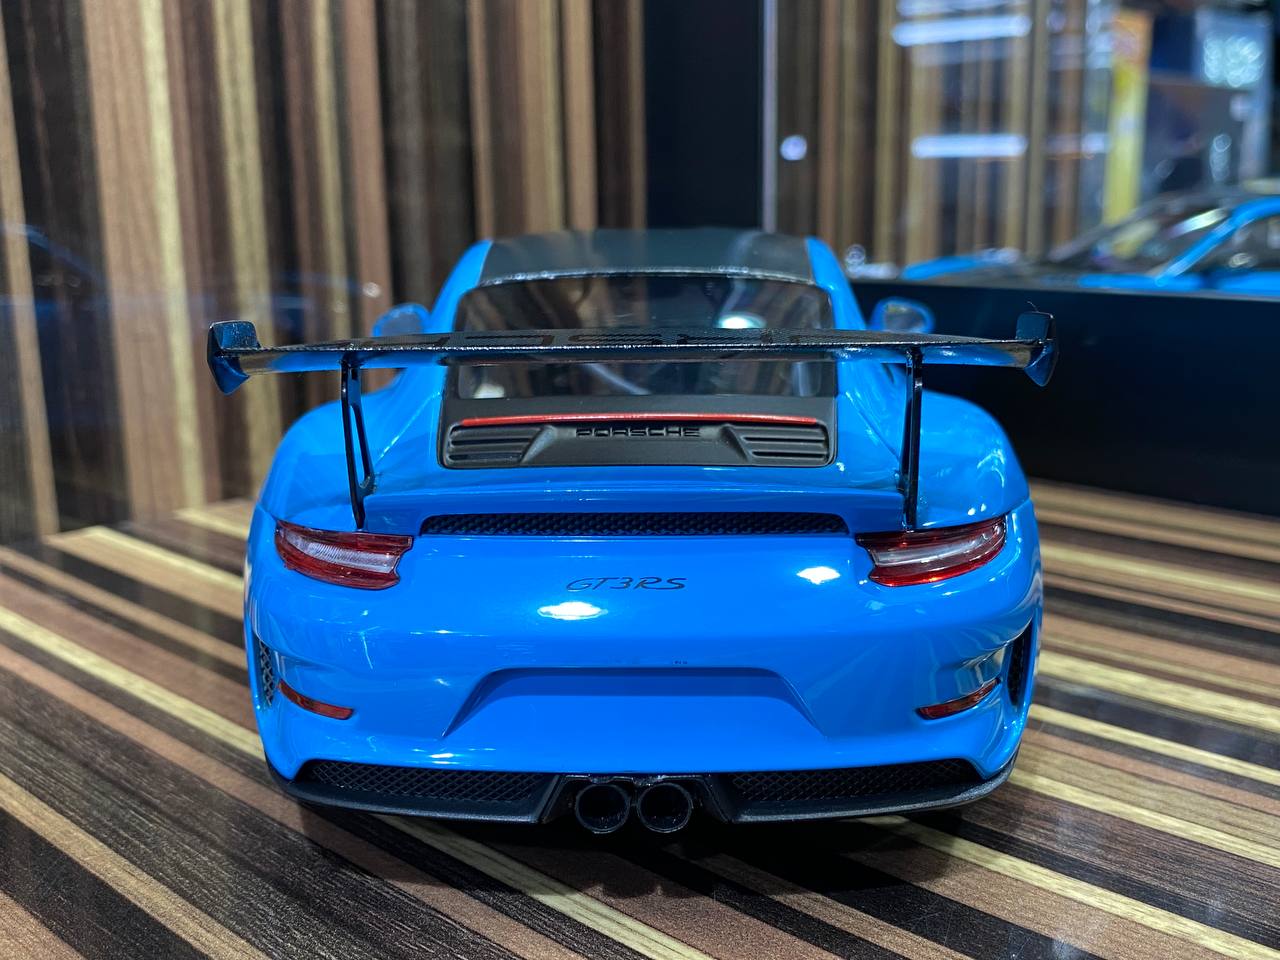 Porsche 911 GT3 RS (991.2) 2019 Weissach package by Minichamps [1/18 |Blue | Resin]